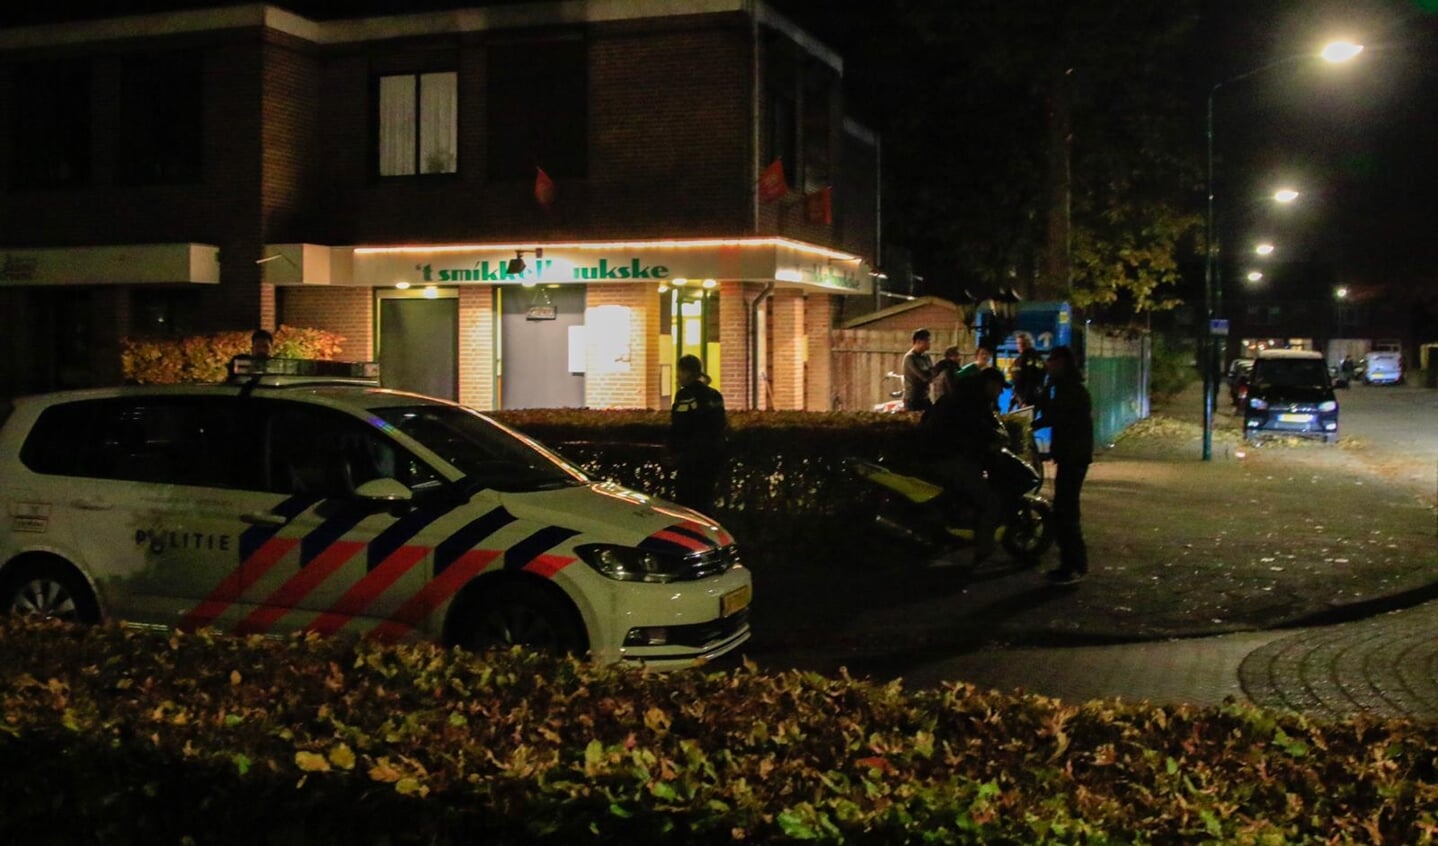 De reeks overvallen begon op vrijdagavond 9 november bij Cafetaria 't Smikkelhuukske in Aarle-Rixtel